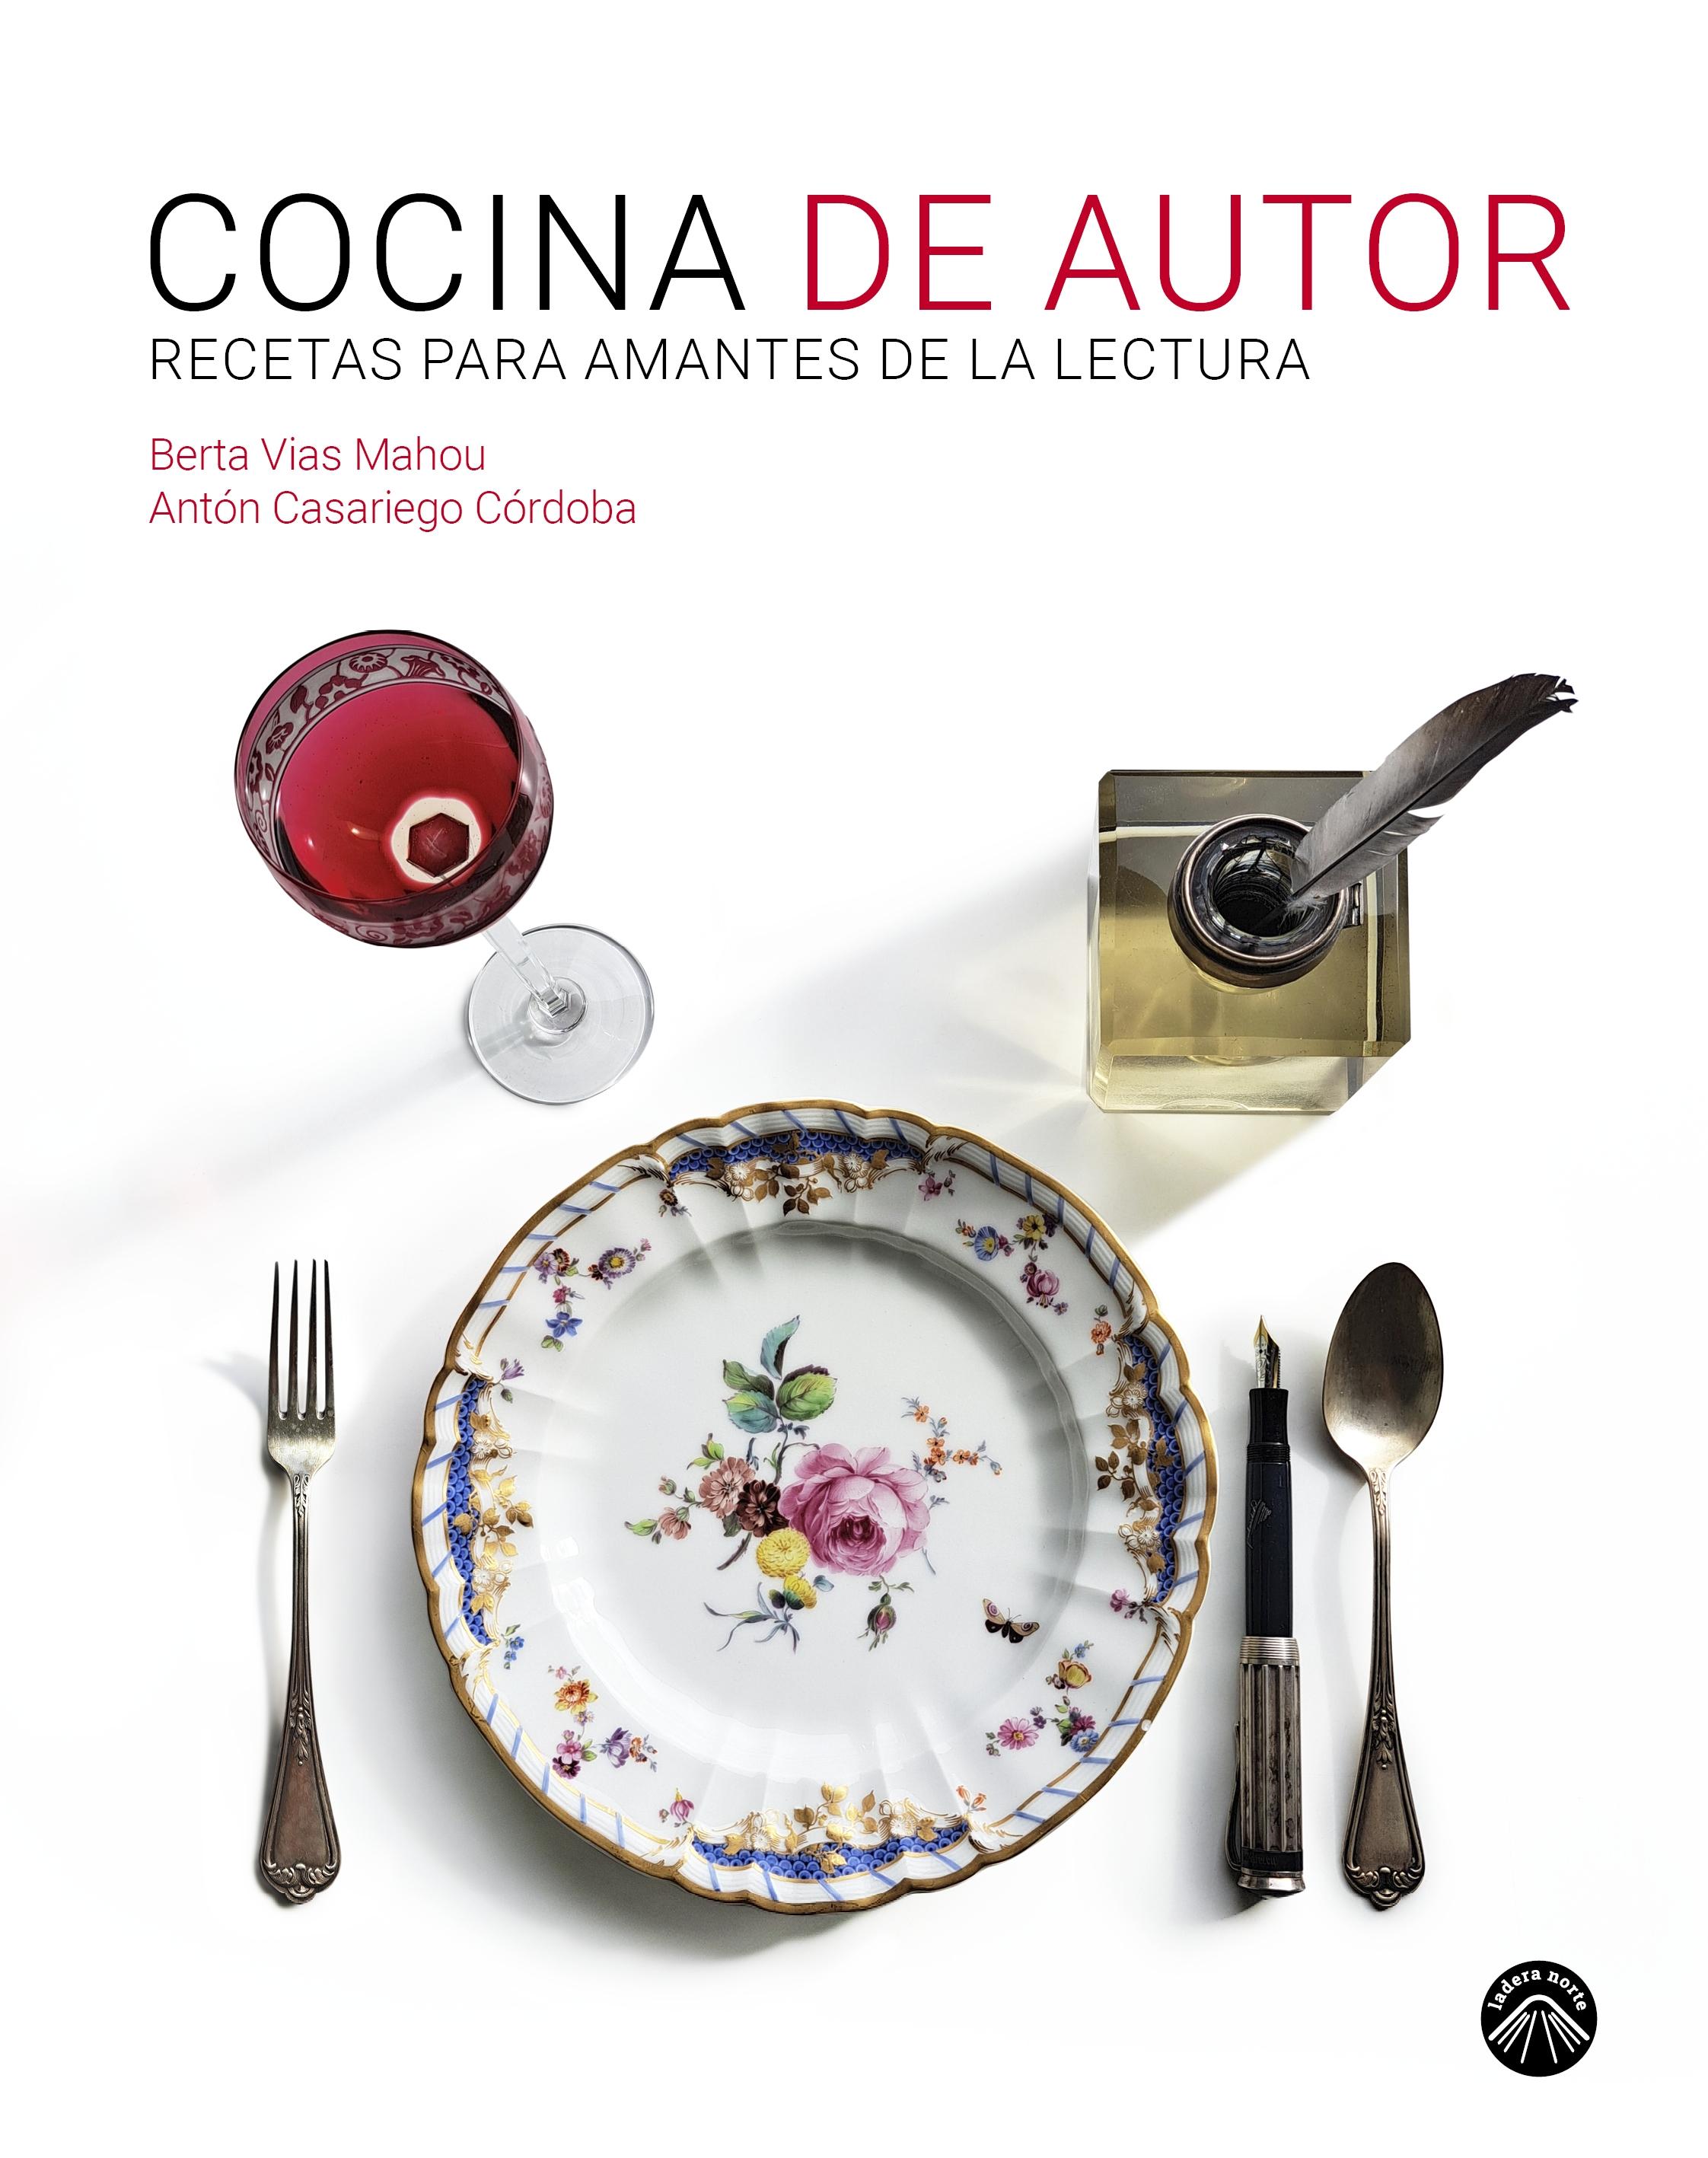 Cocina de Autor "Recetas para Amantes de la Lectura". 